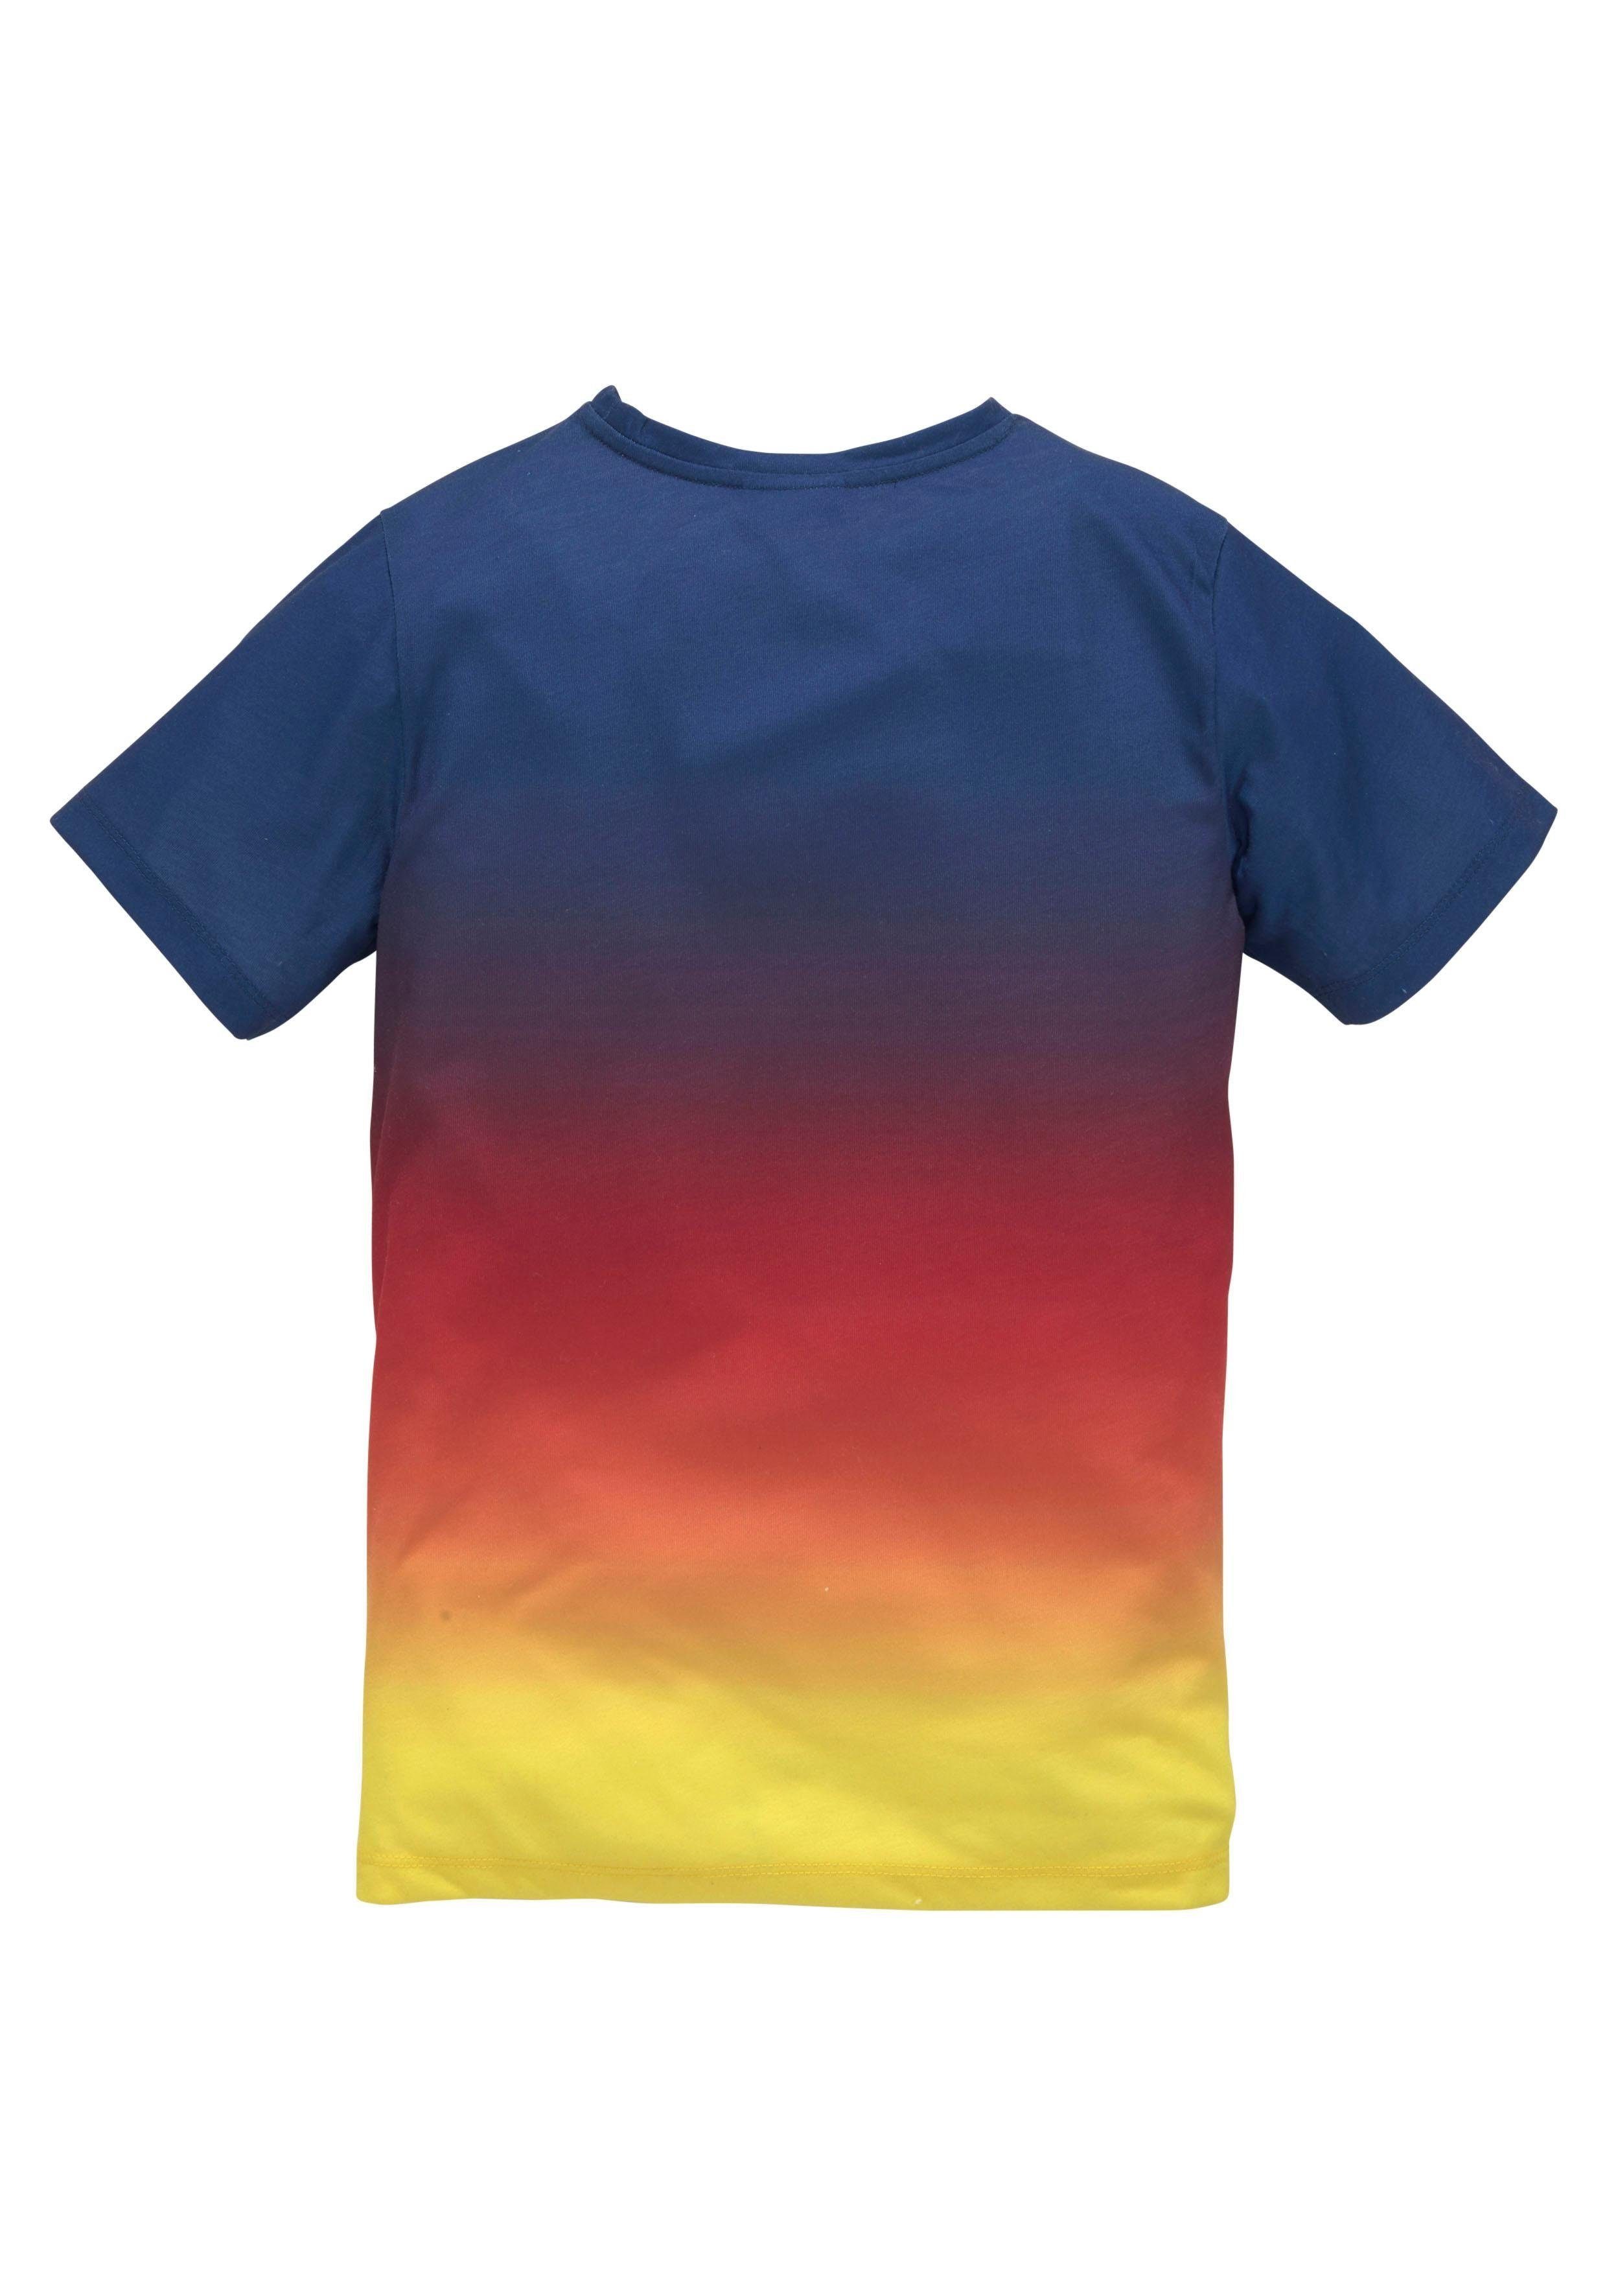 Druck im vorn Chiemsee Farbverlauf T-Shirt mit